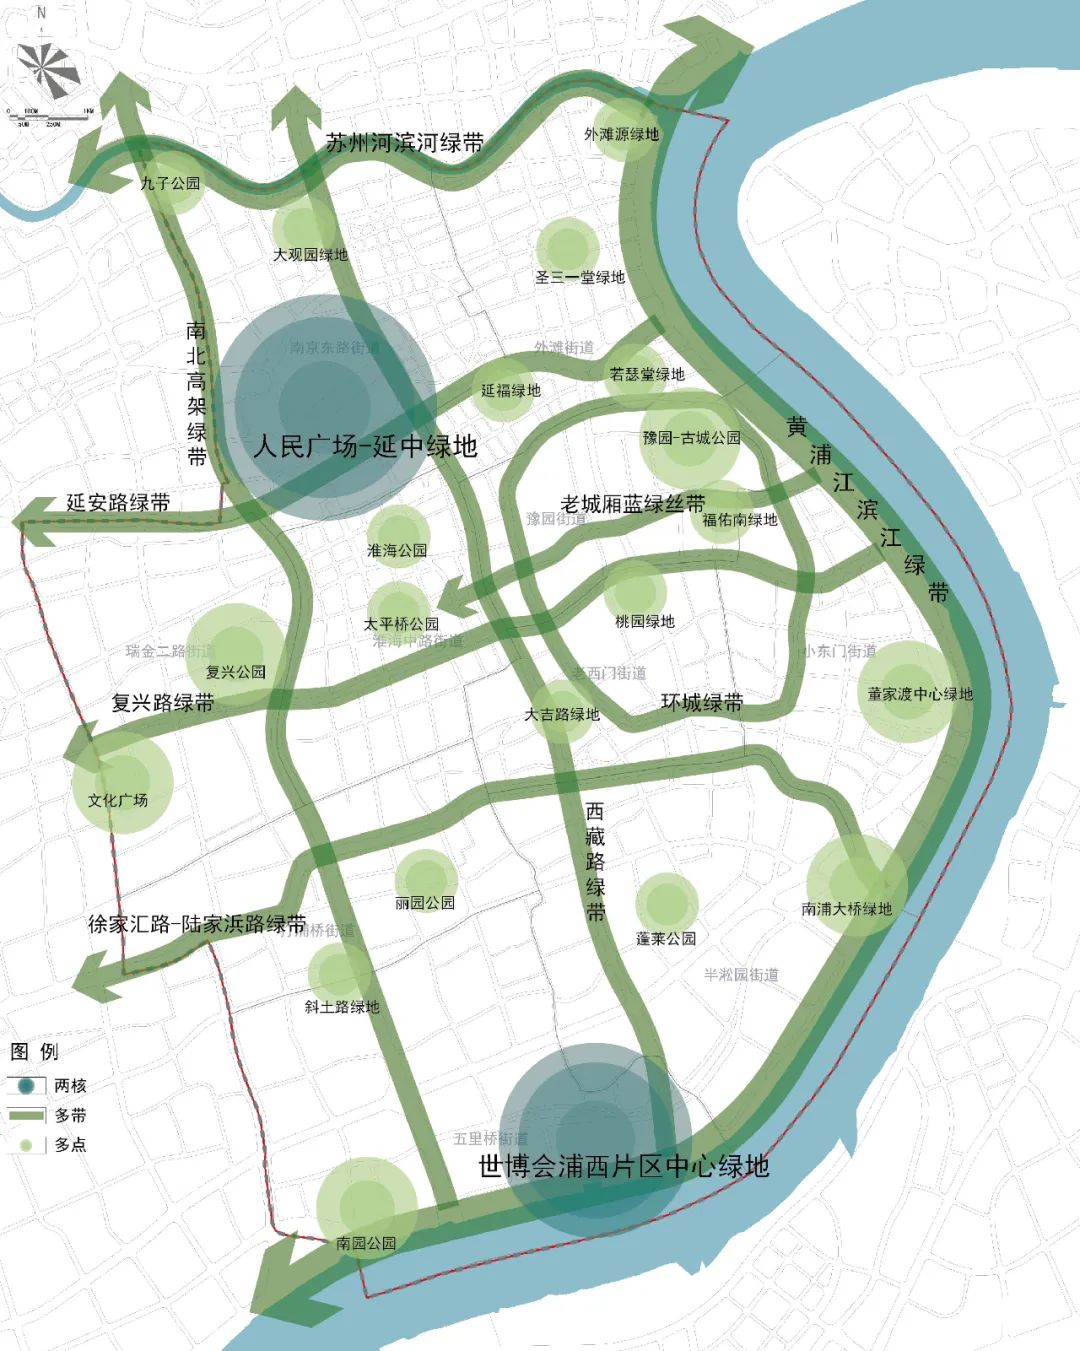 黄浦区单元规划草案公示将打造三带两轴四组团整体结构